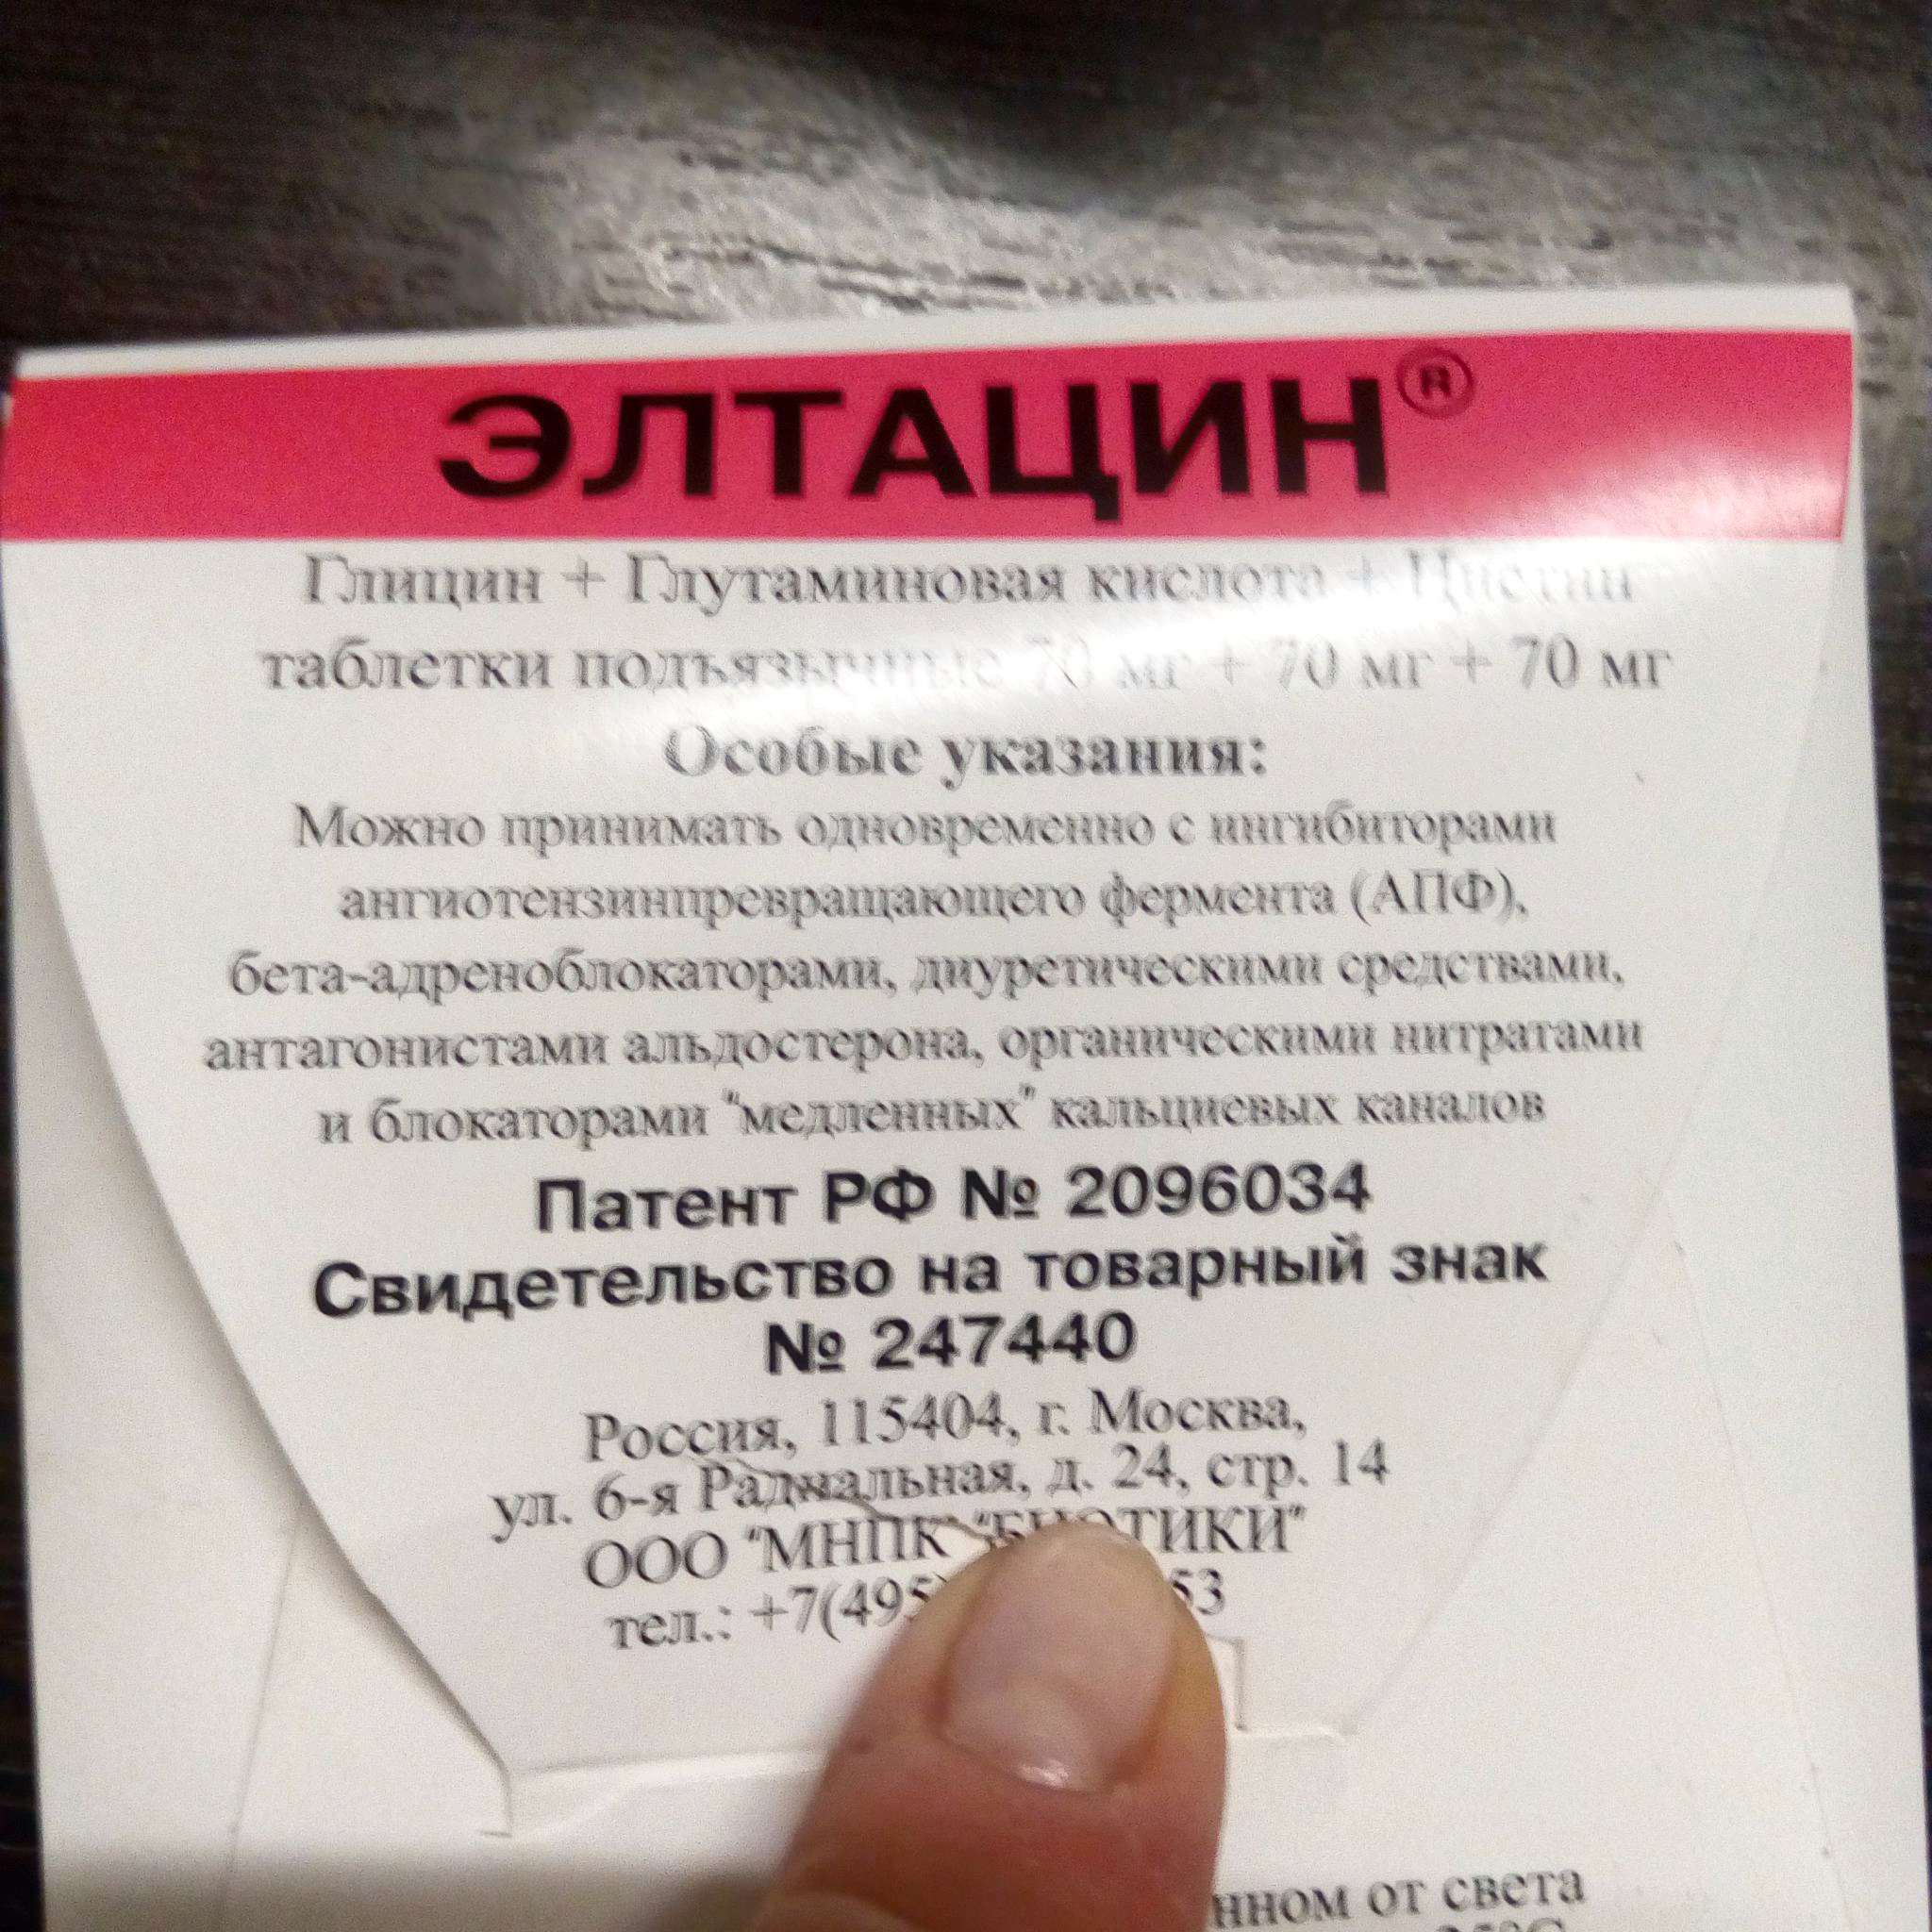 Элтацин Стоимость В Аптеках